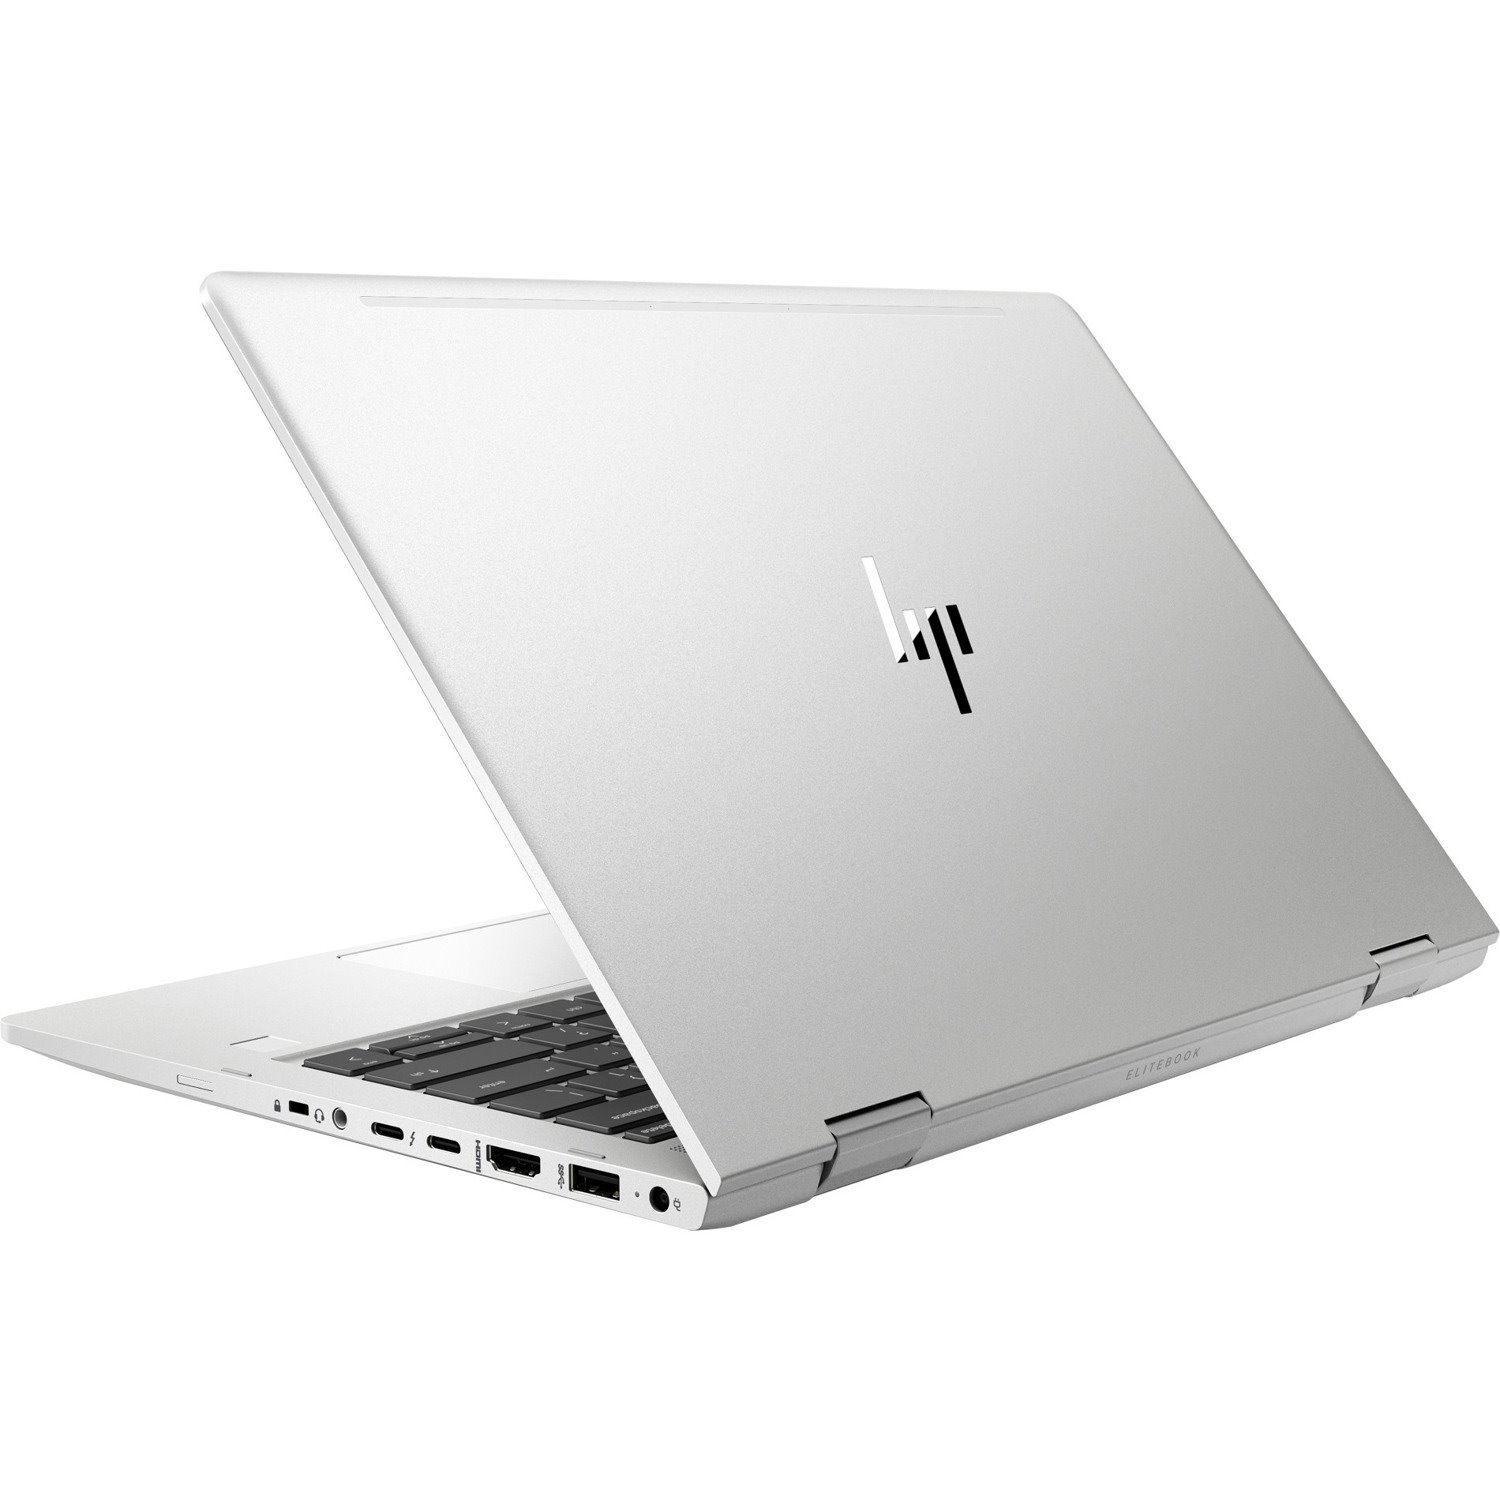 HP EliteBook x360 830 G6 13.3" Touchscreen Convertible 2 in 1 Notebook - 1920 x 1080 - Intel Core i5 8th Gen i5-8265U Quad-core (4 Core) 1.60 GHz - 8 GB Total RAM - 256 GB SSD